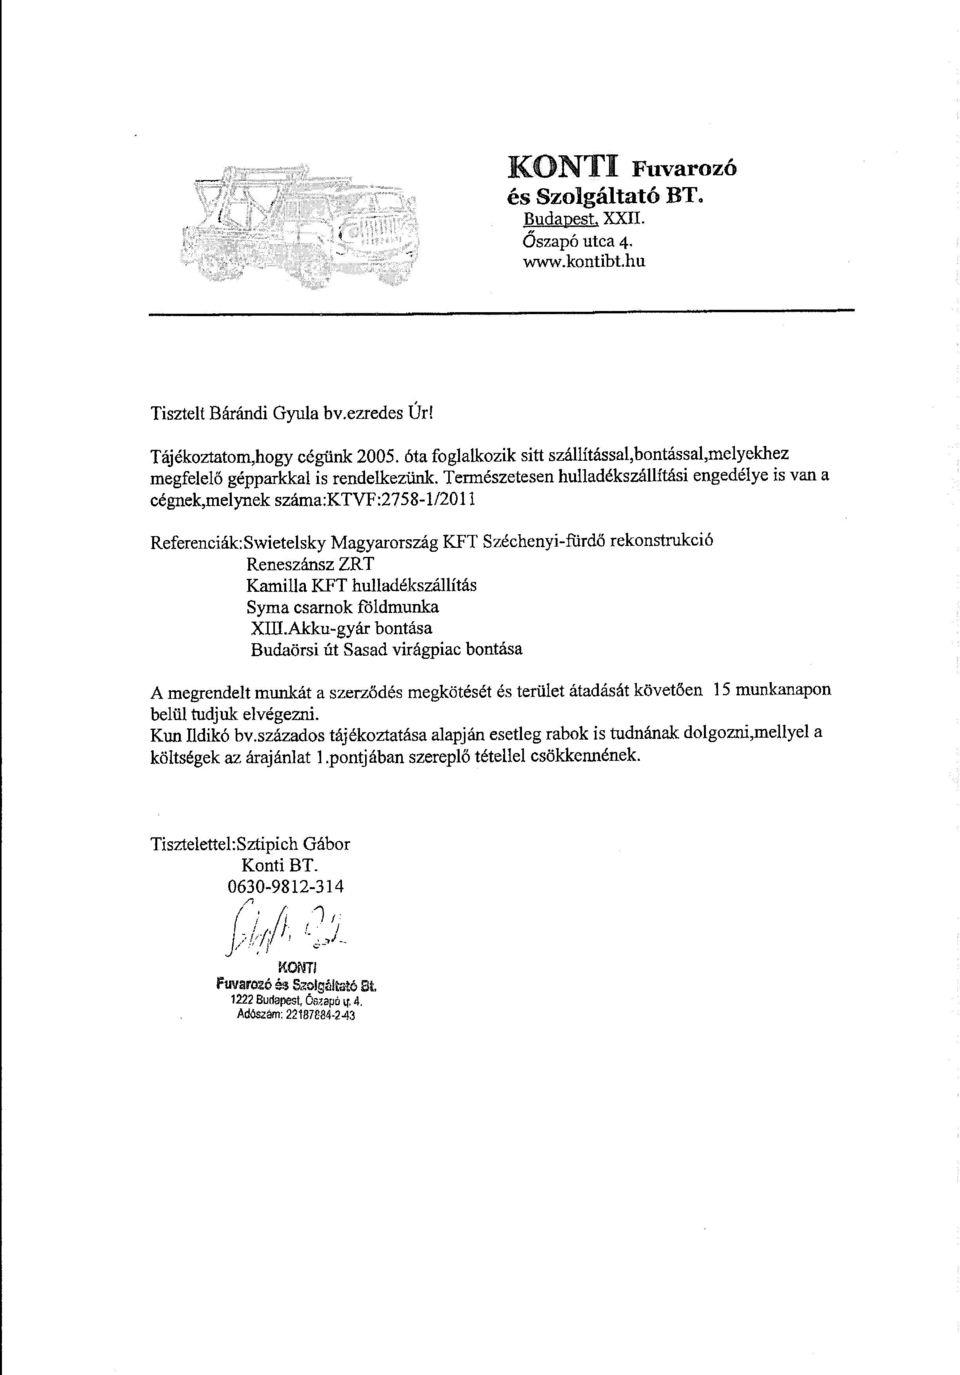 Természetesen hulladékszállítási engedélye is van a cégnek,melynek száma:ktvf:2758-1/2011 Referenciák:Swietelsky Magyarország KFT Széchenyi-fürdő rekonstrukció Reneszánsz ZRT Kamilla KFT